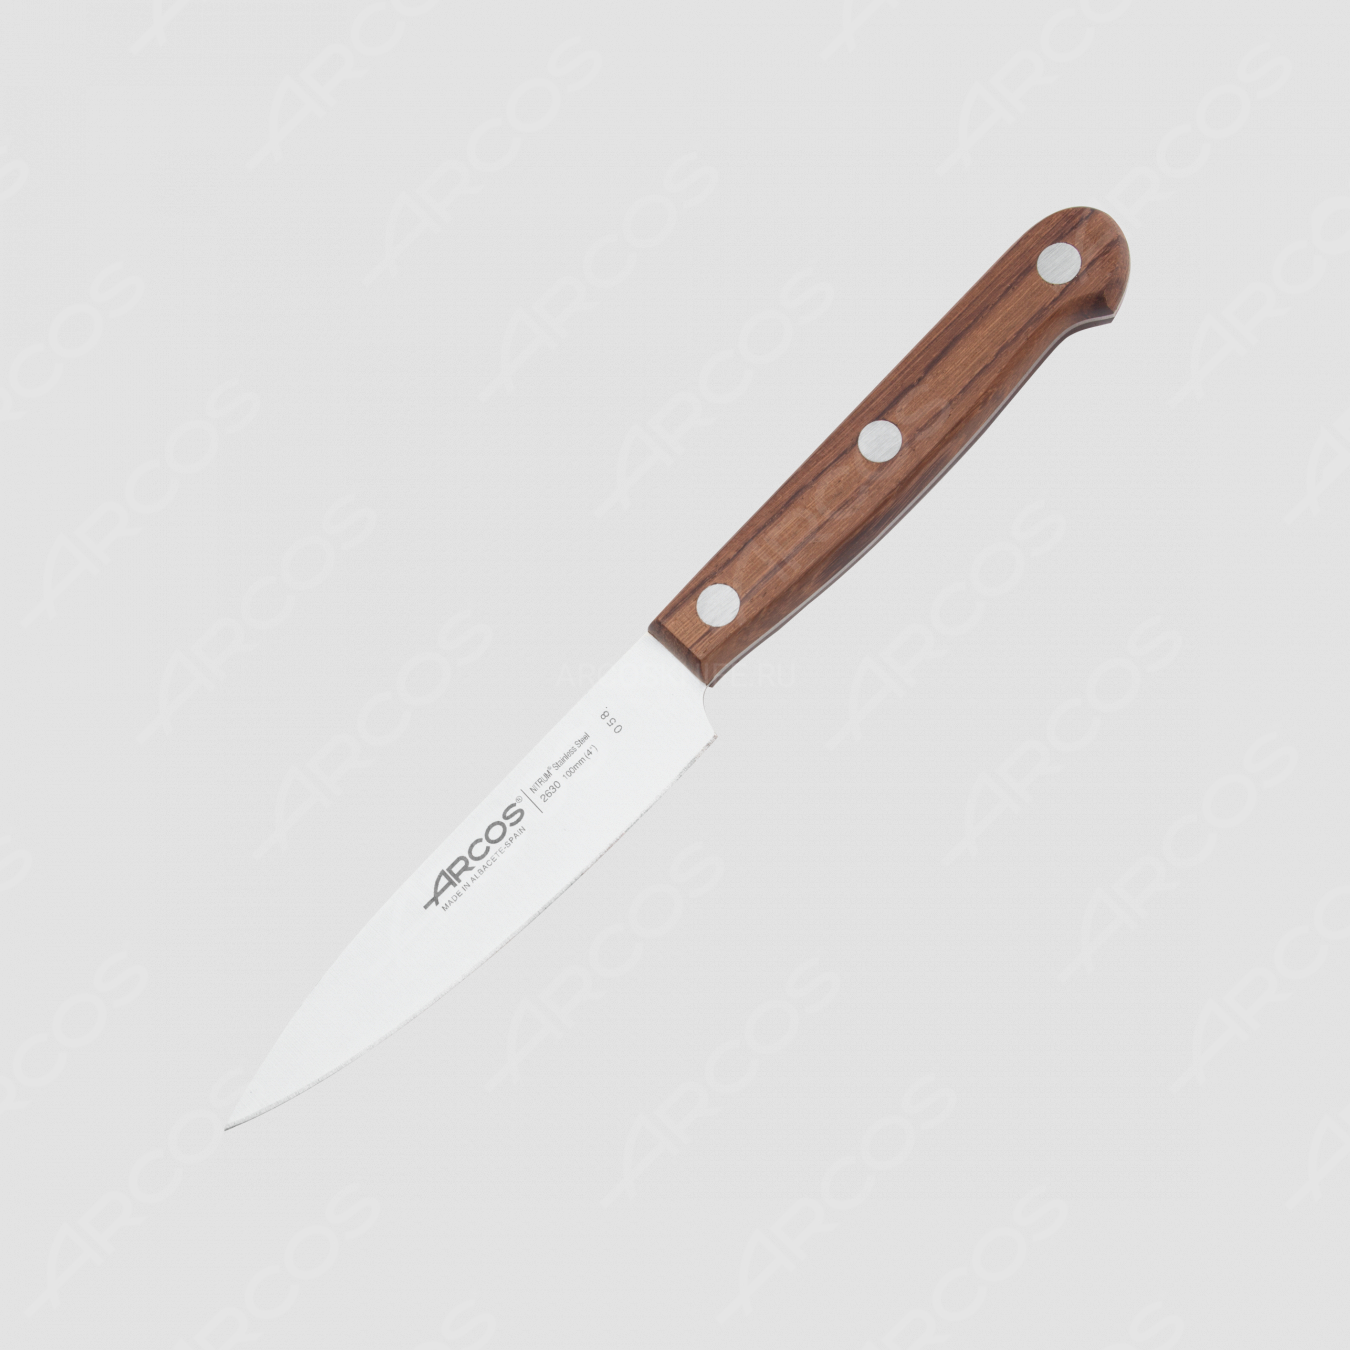 Нож кухонный 10 см, серия Atlantico, ARCOS, Испания